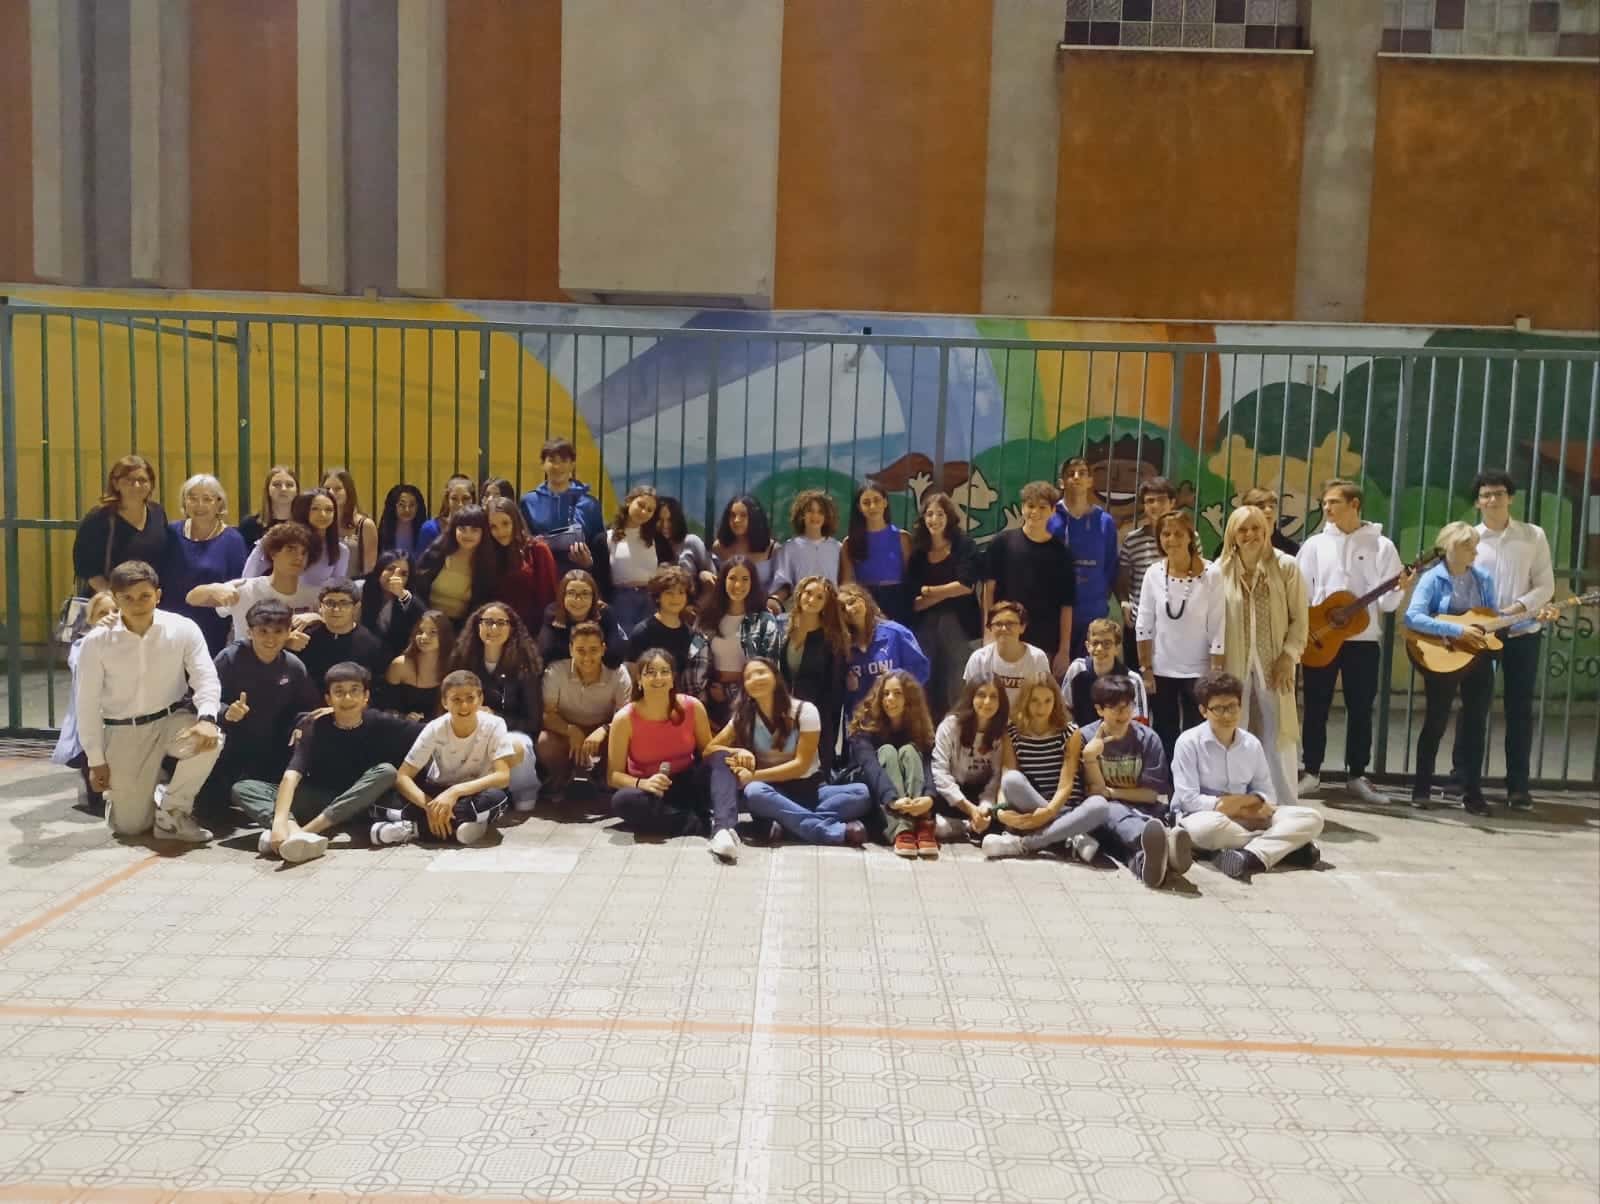 Al Liceo Spedalieri di Catania Accoglienza e Inclusione: ragazzi ucraini frequentano l’istituto – FOTO e VIDEO